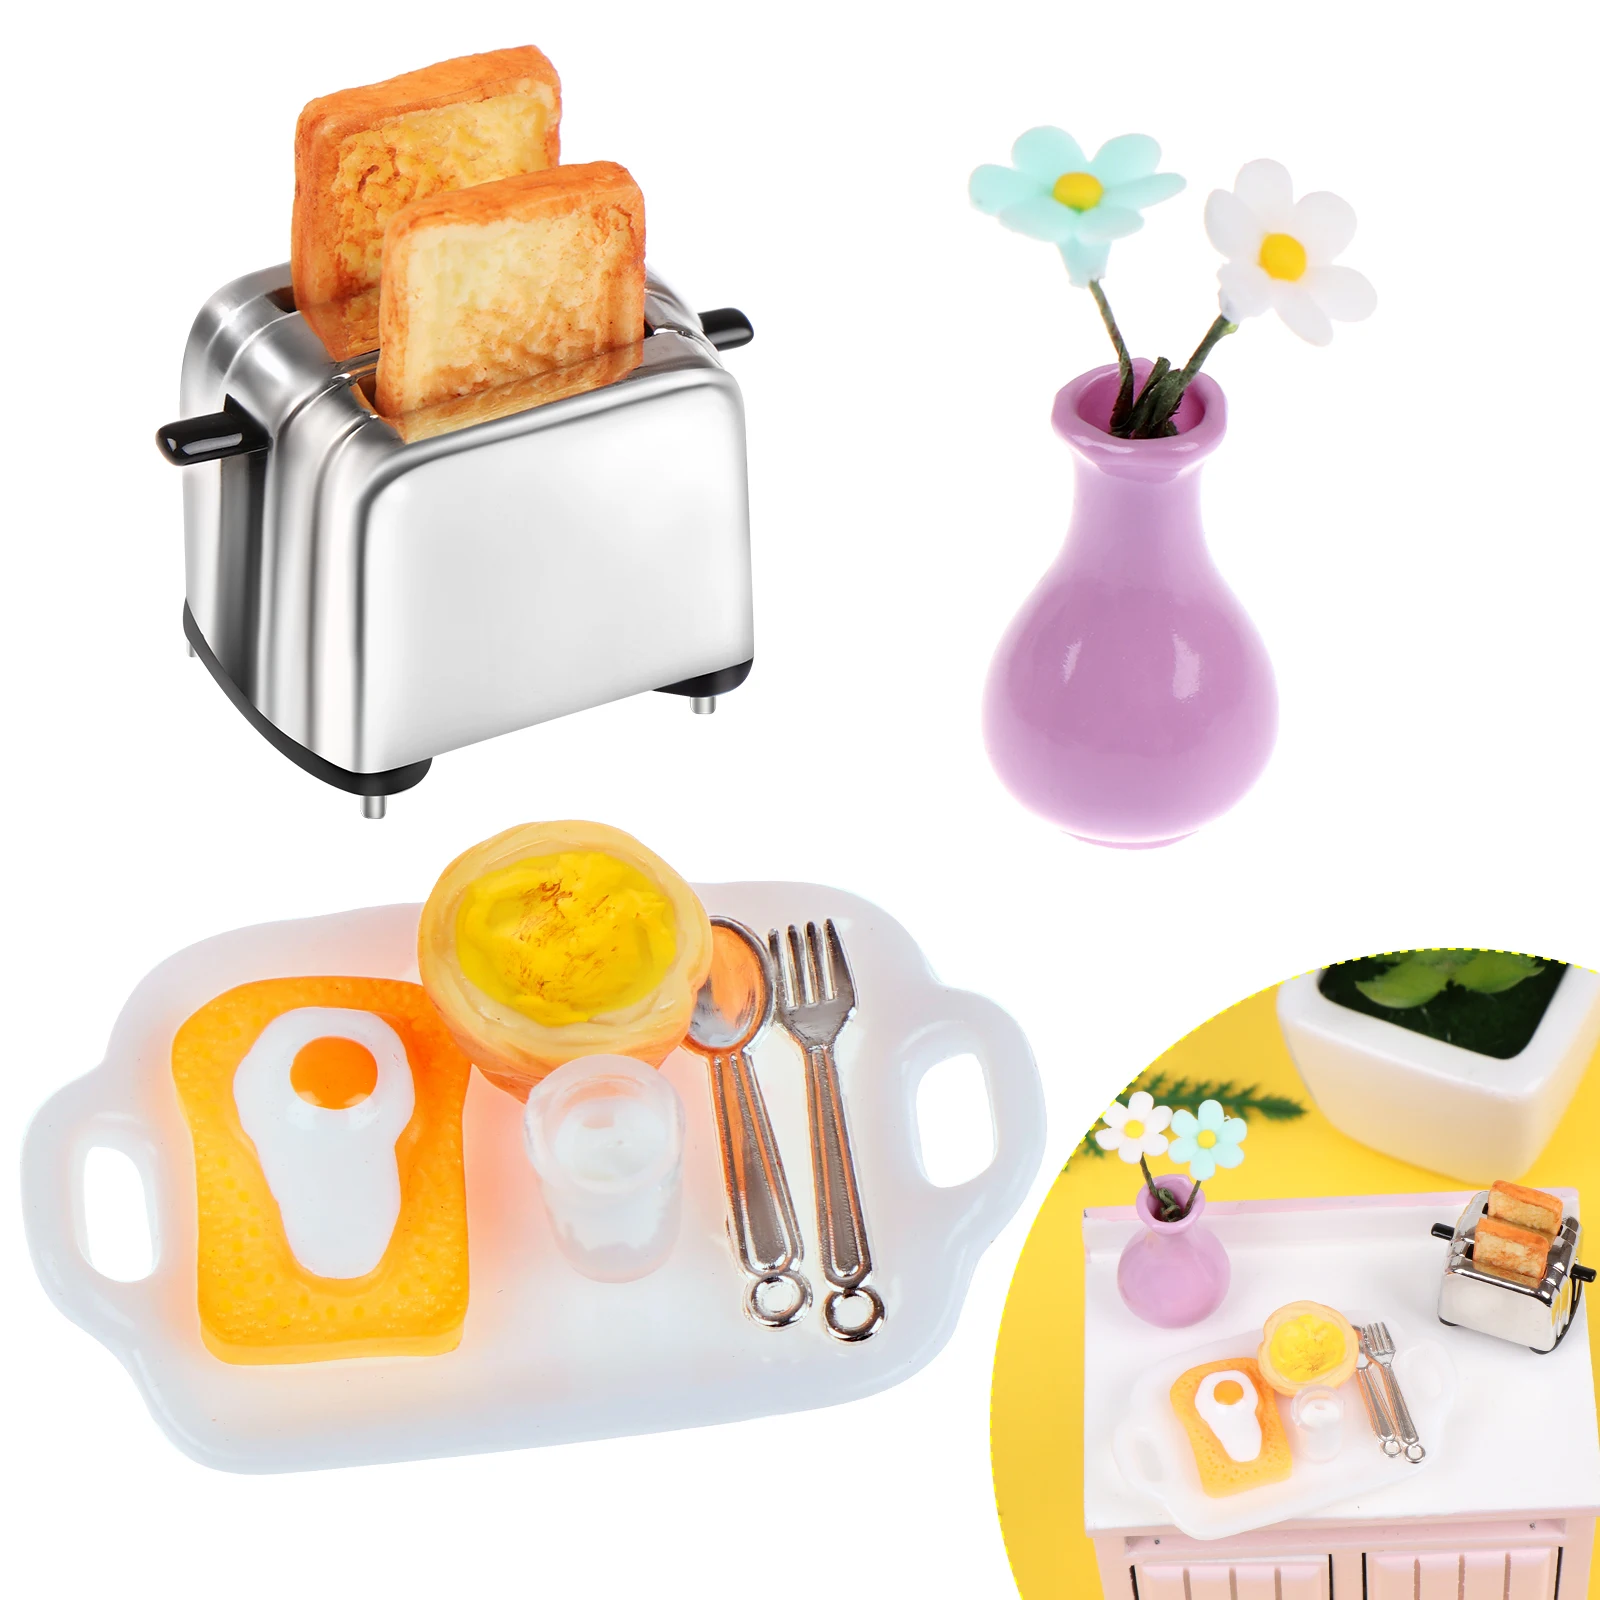 

Кукольный домик, ролевая игра, модель сока, машина для хлеба с имитацией тостов, миниатюрная кухня, украшение еды для завтрака